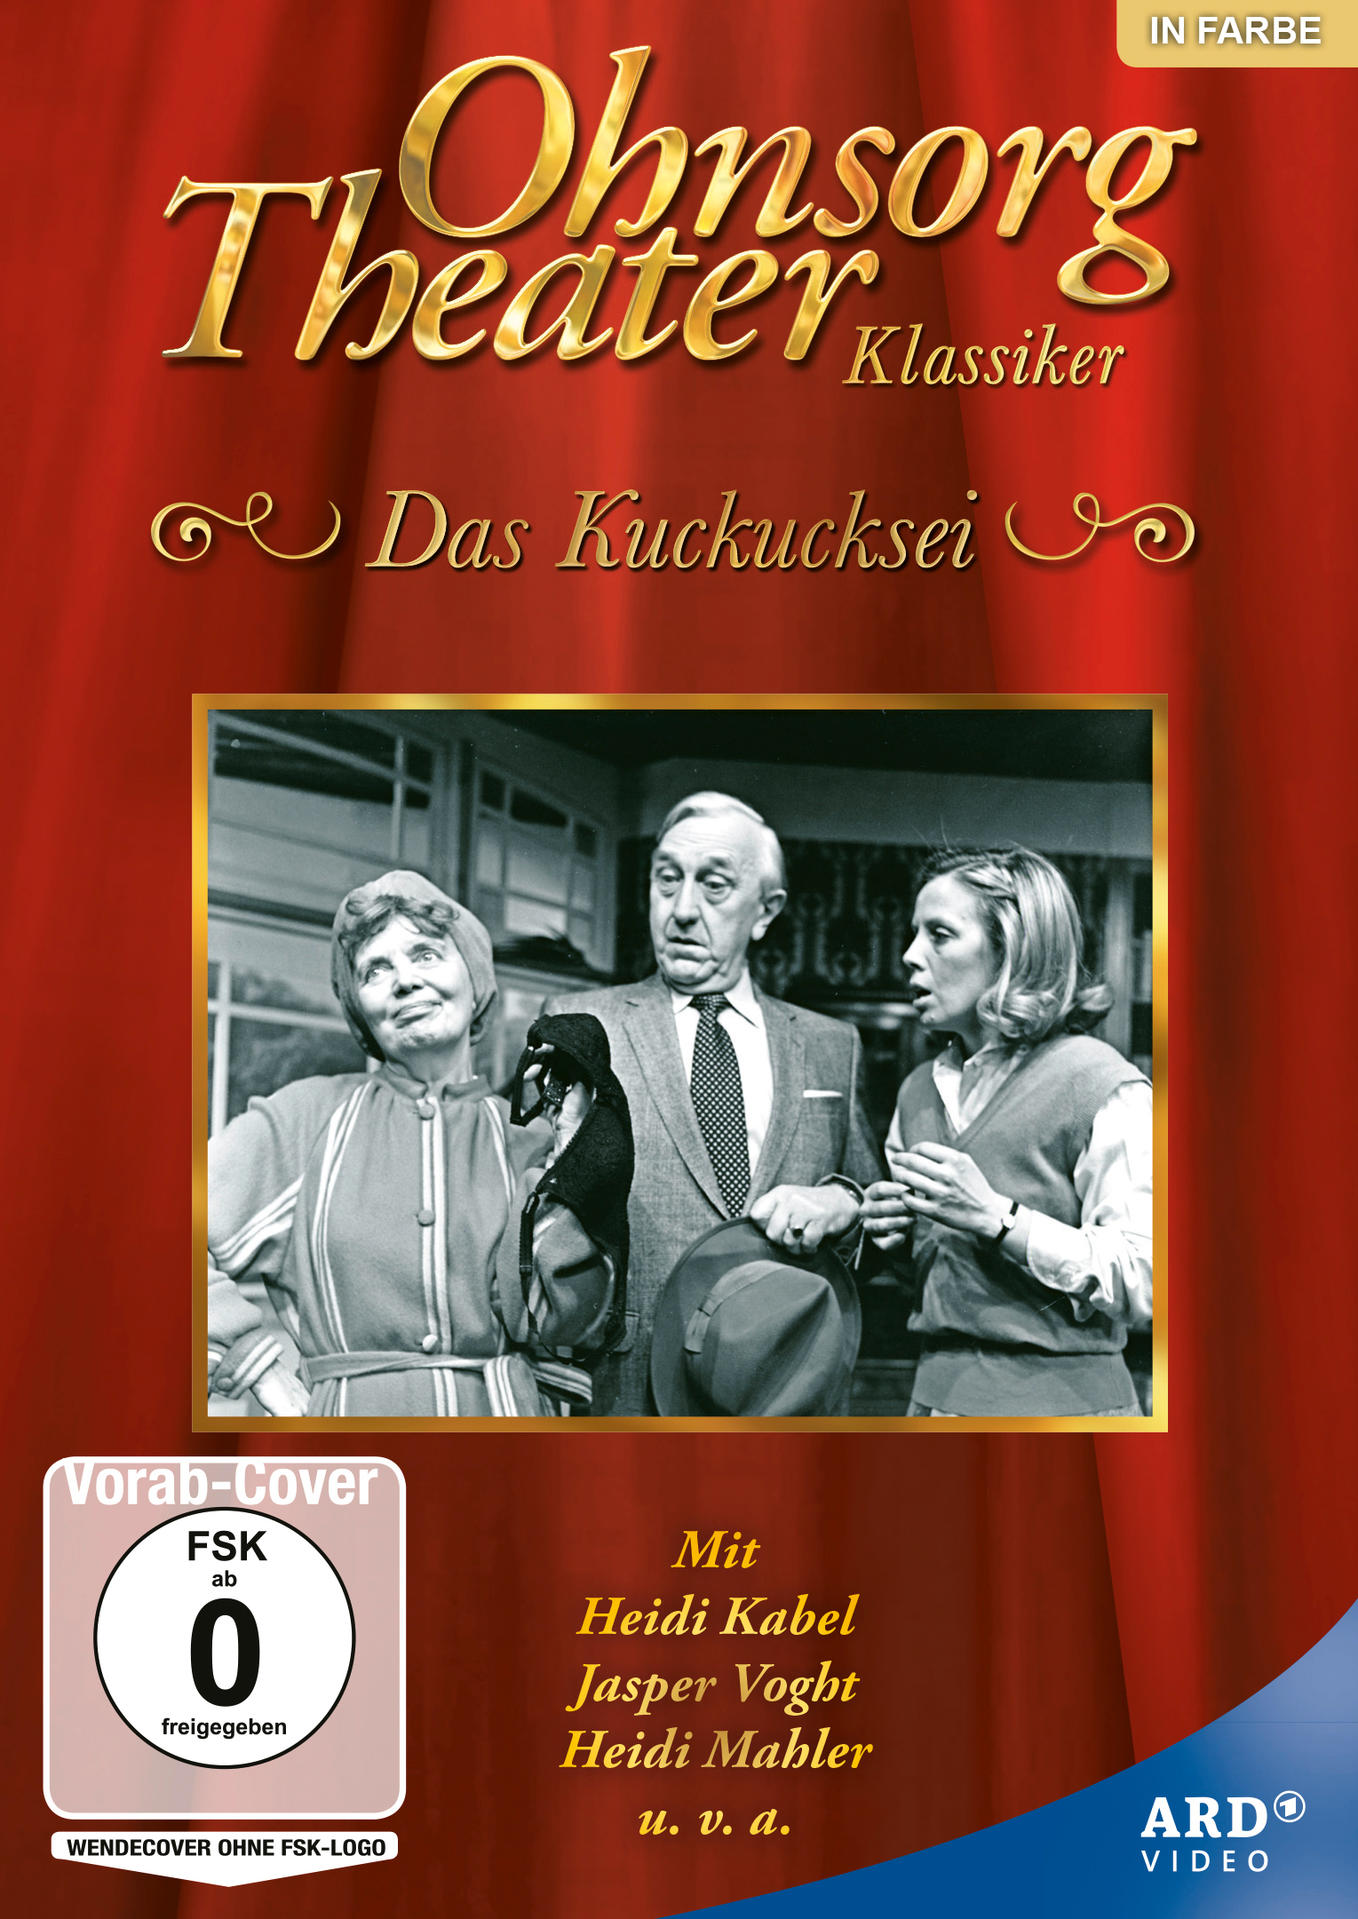 Das Klassiker: Kuckucksei Ohnsorg-Theater DVD